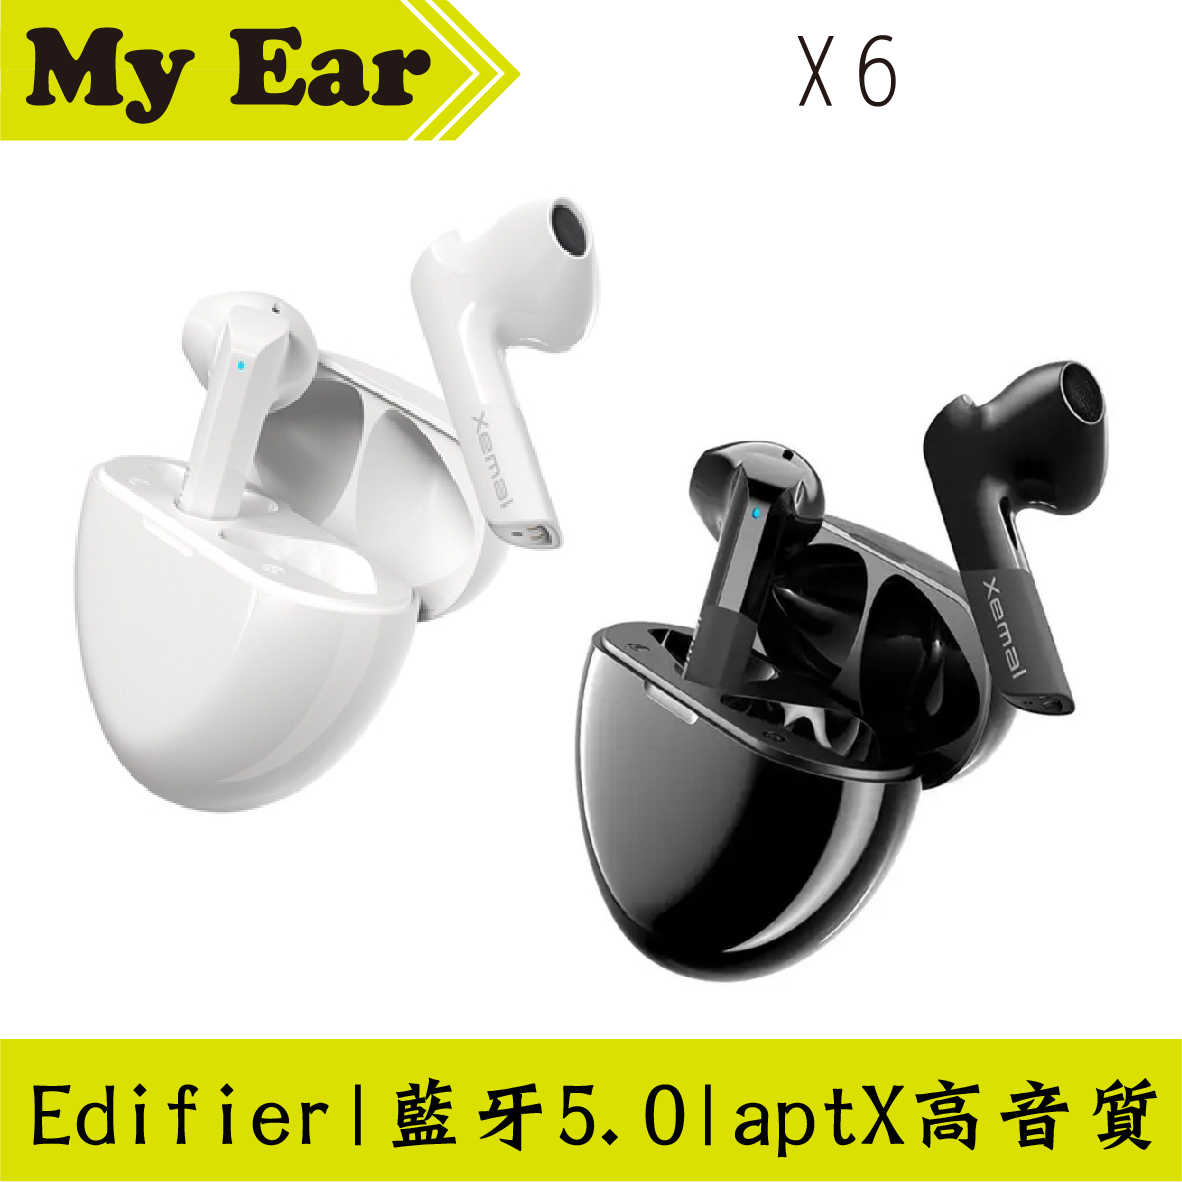 Edifier X6 藍牙5.0 通話降噪 無線藍芽耳機 | My Ear 耳機專門店